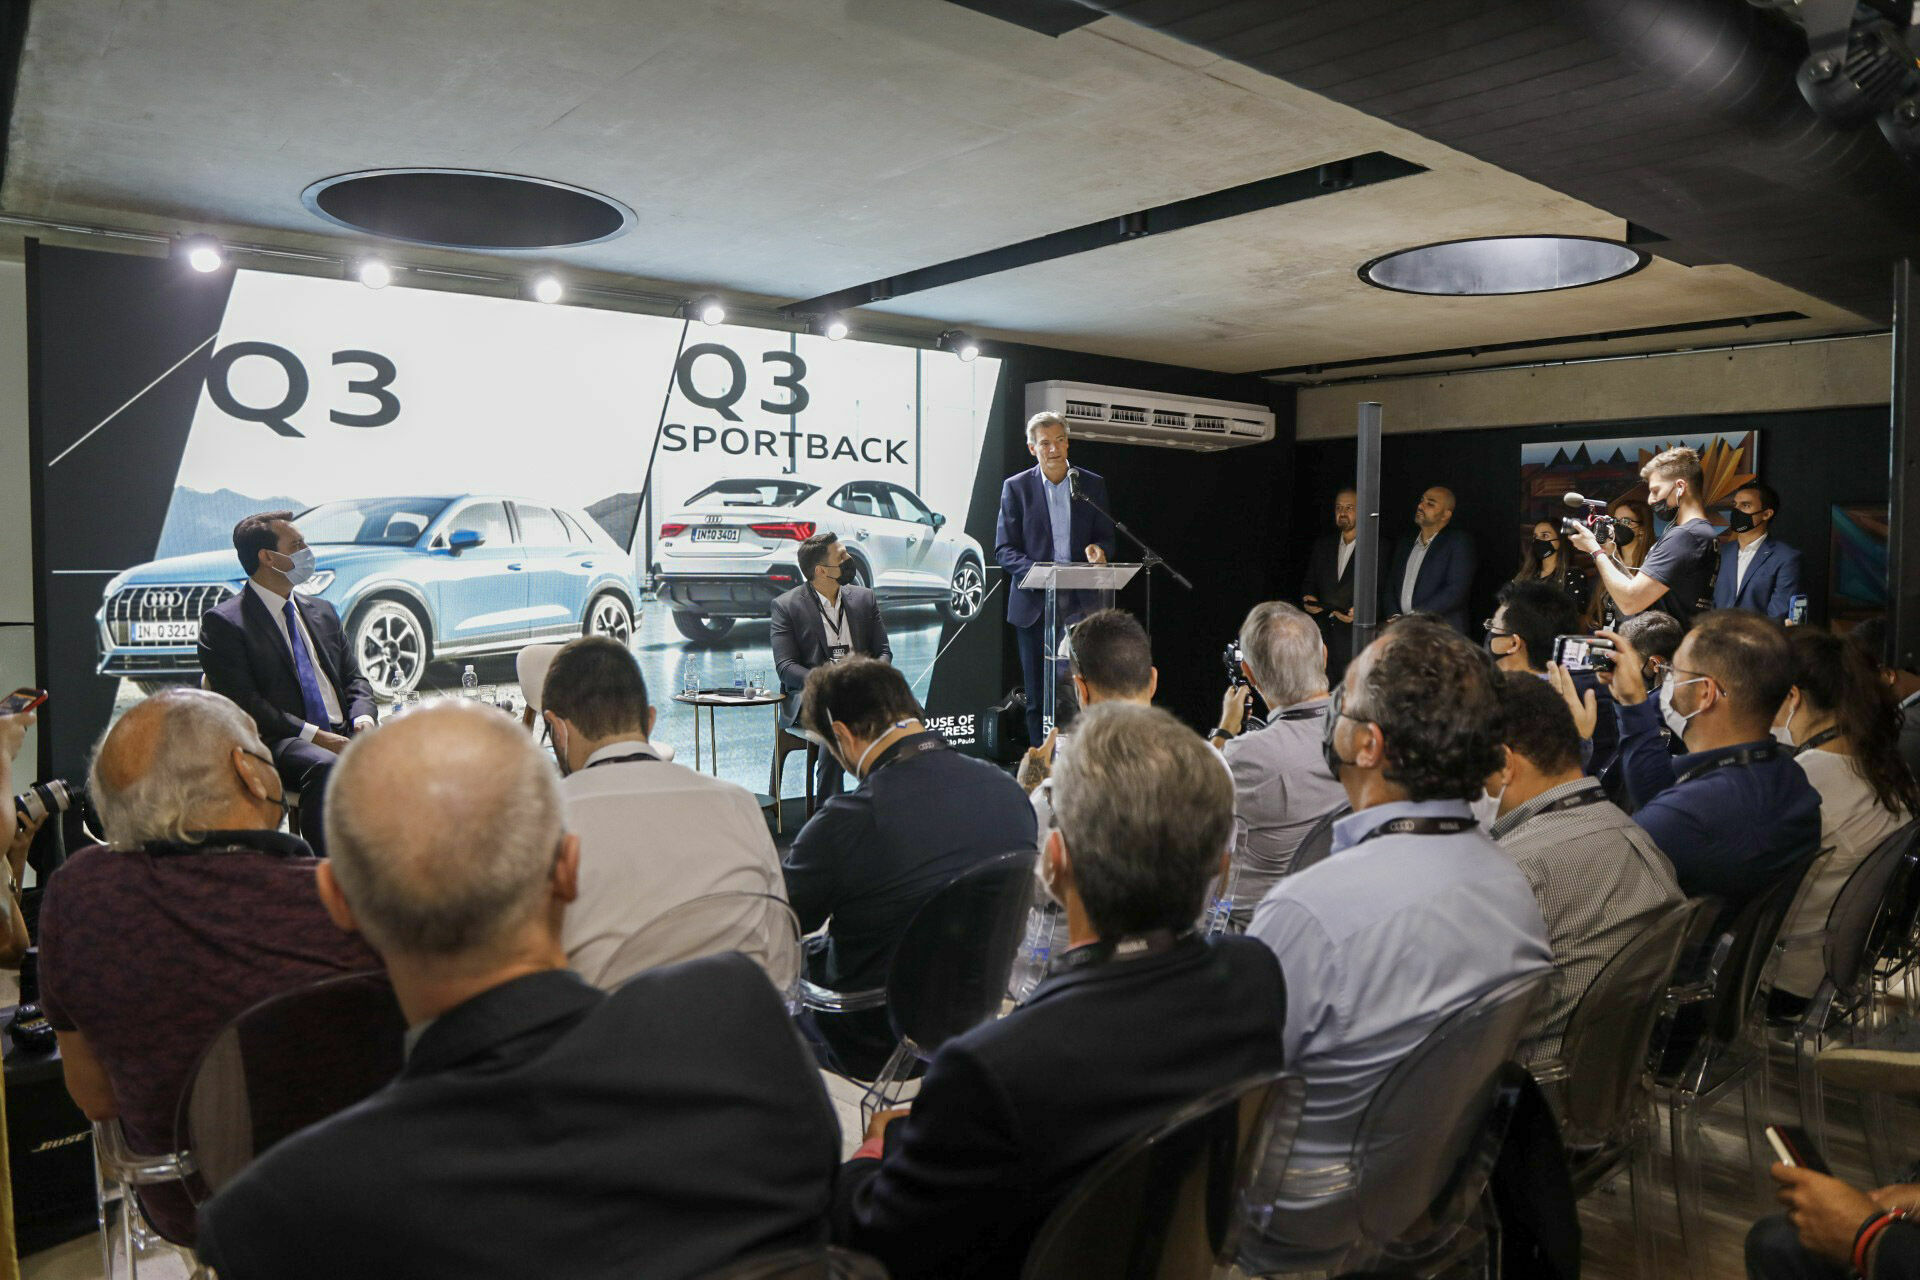 Audi do Brasil will restart production in 2022